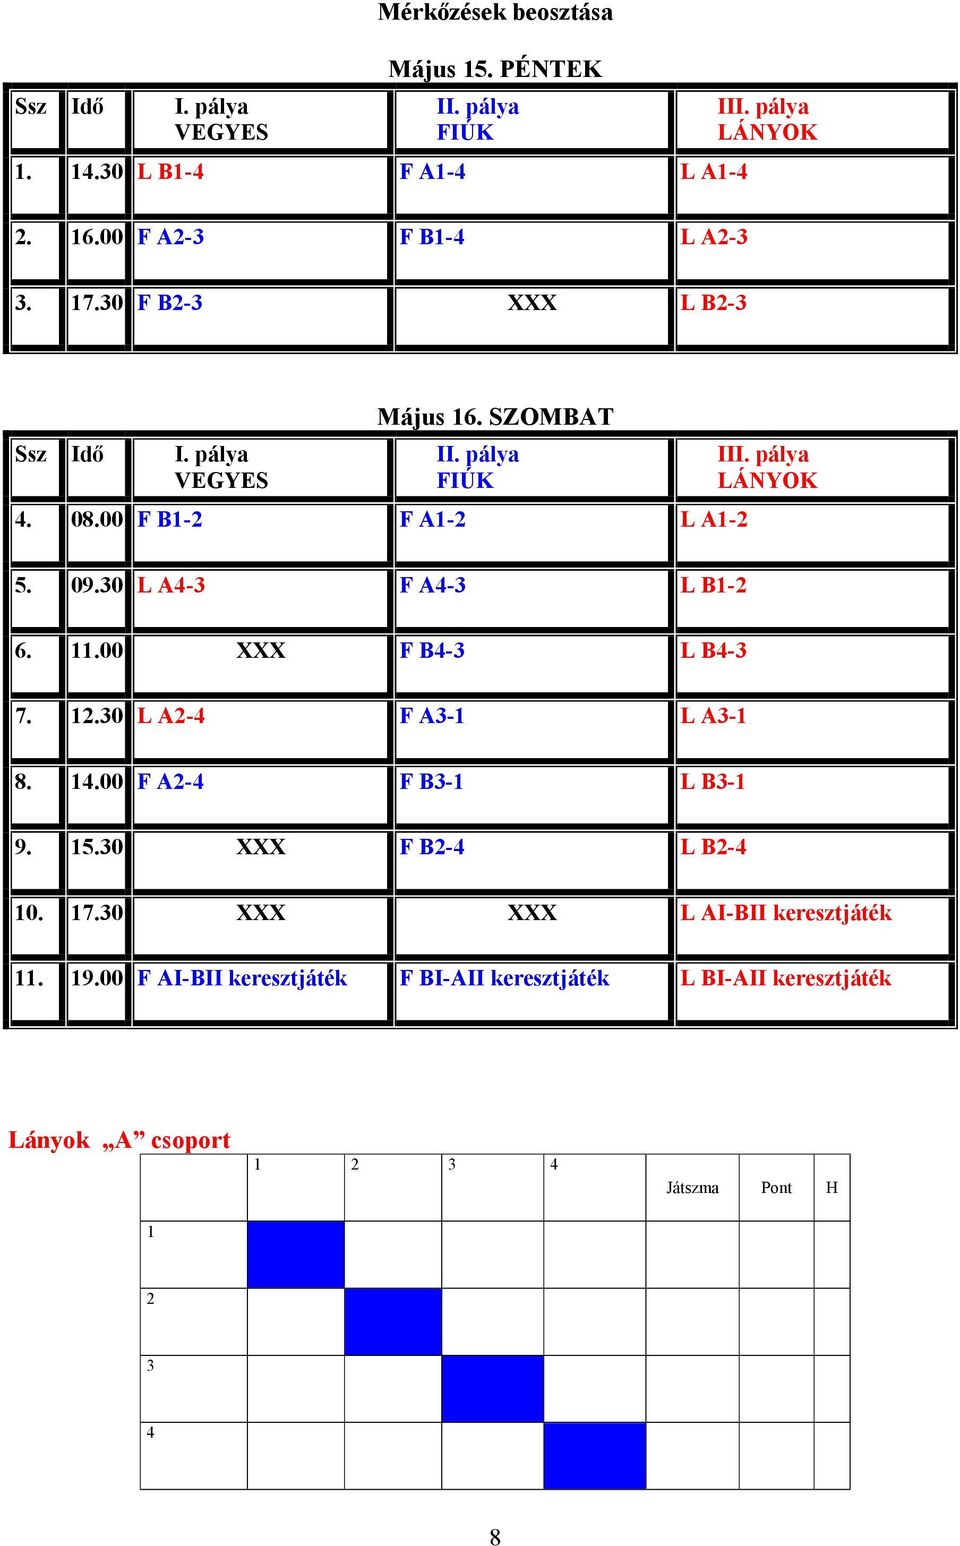 pálya LÁNYOK 5. 09.30 L A4-3 F A4-3 L B1-2 6. 11.00 XXX F B4-3 L B4-3 7. 12.30 L A2-4 F A3-1 L A3-1 8. 14.00 F A2-4 F B3-1 L B3-1 9. 15.